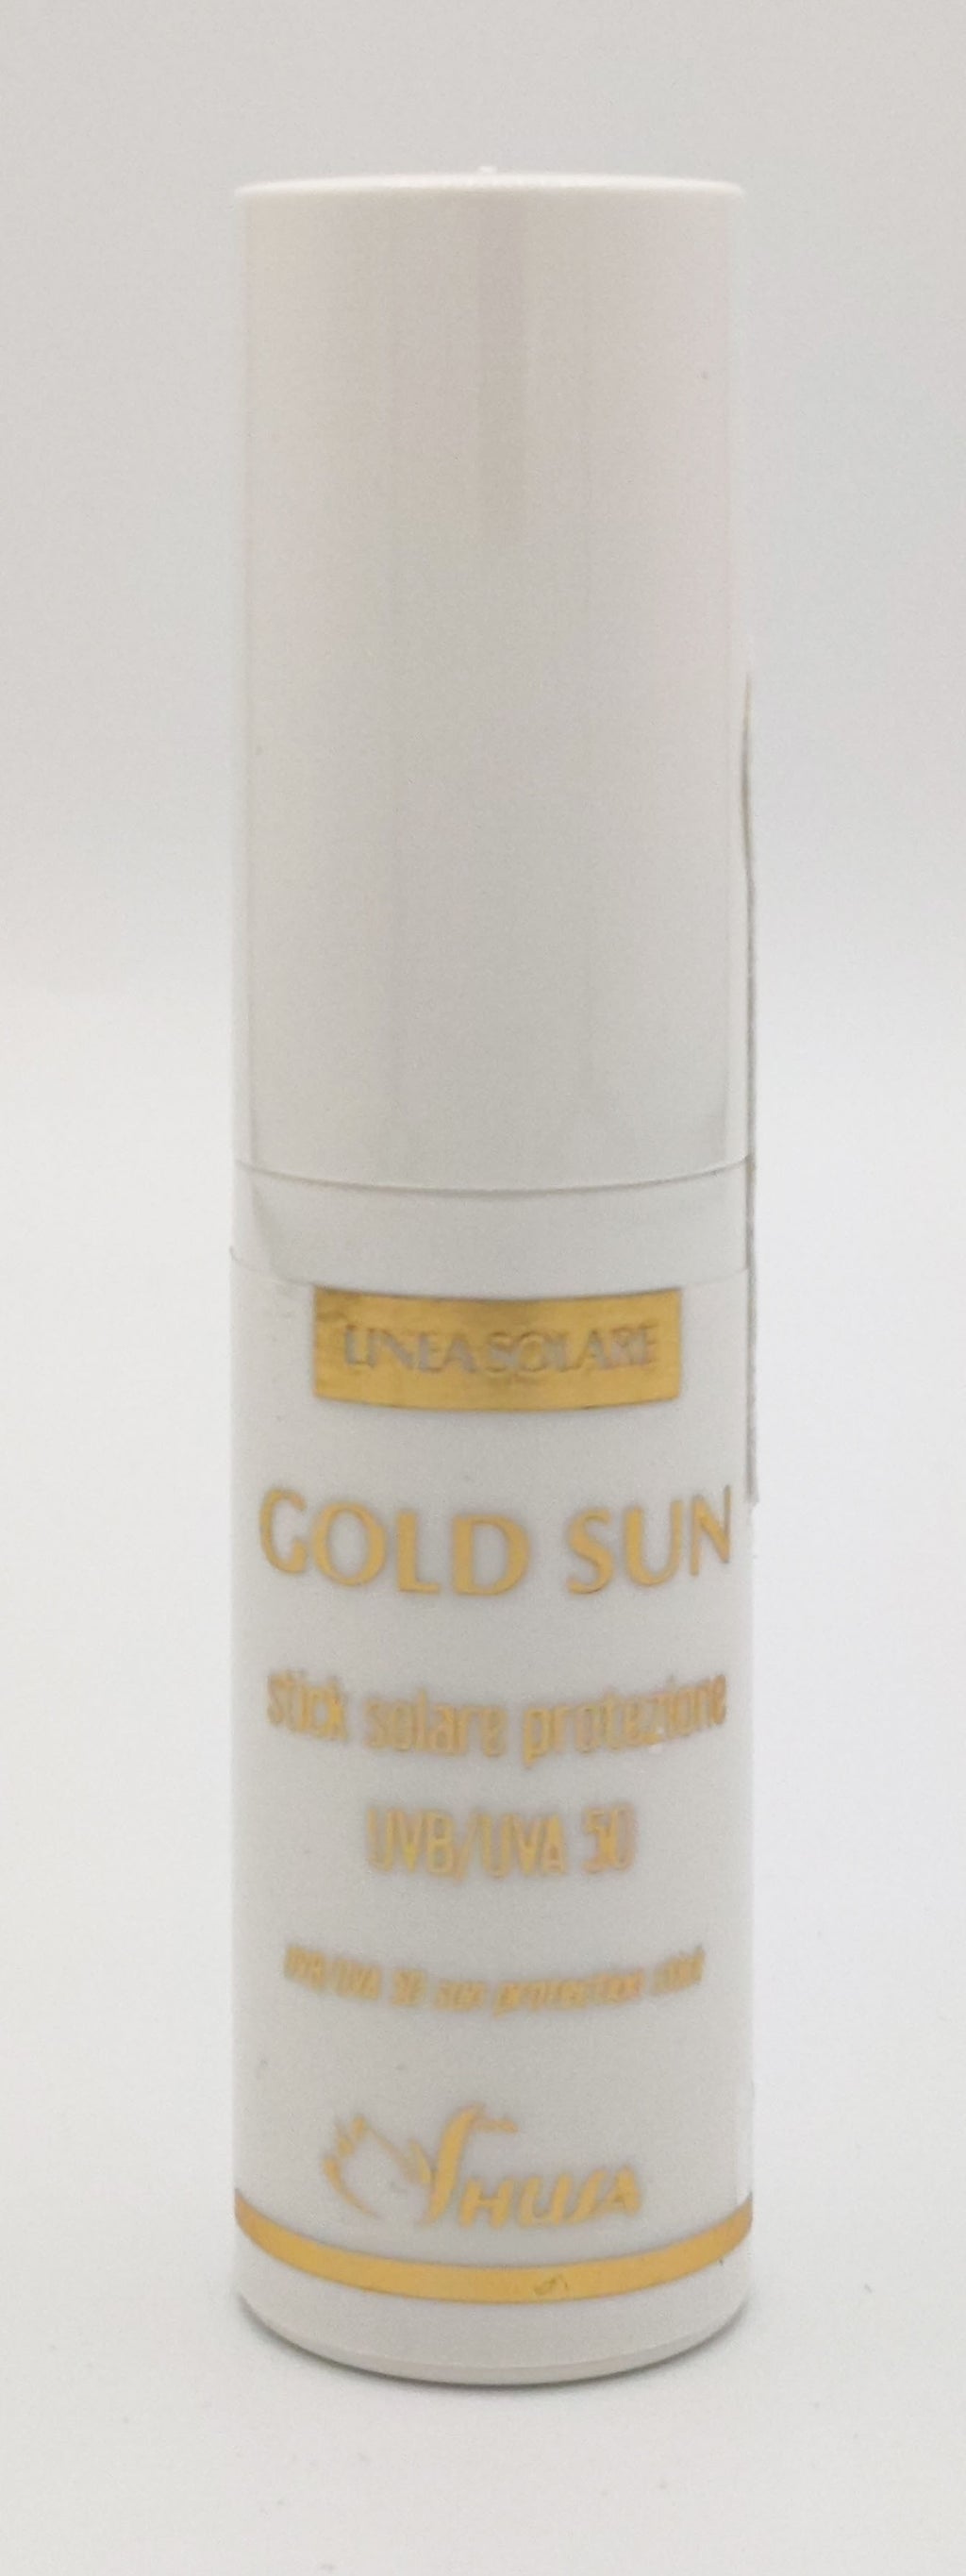 Gold sun - Stick solare protezione UVA/UVB 50    8,5ml